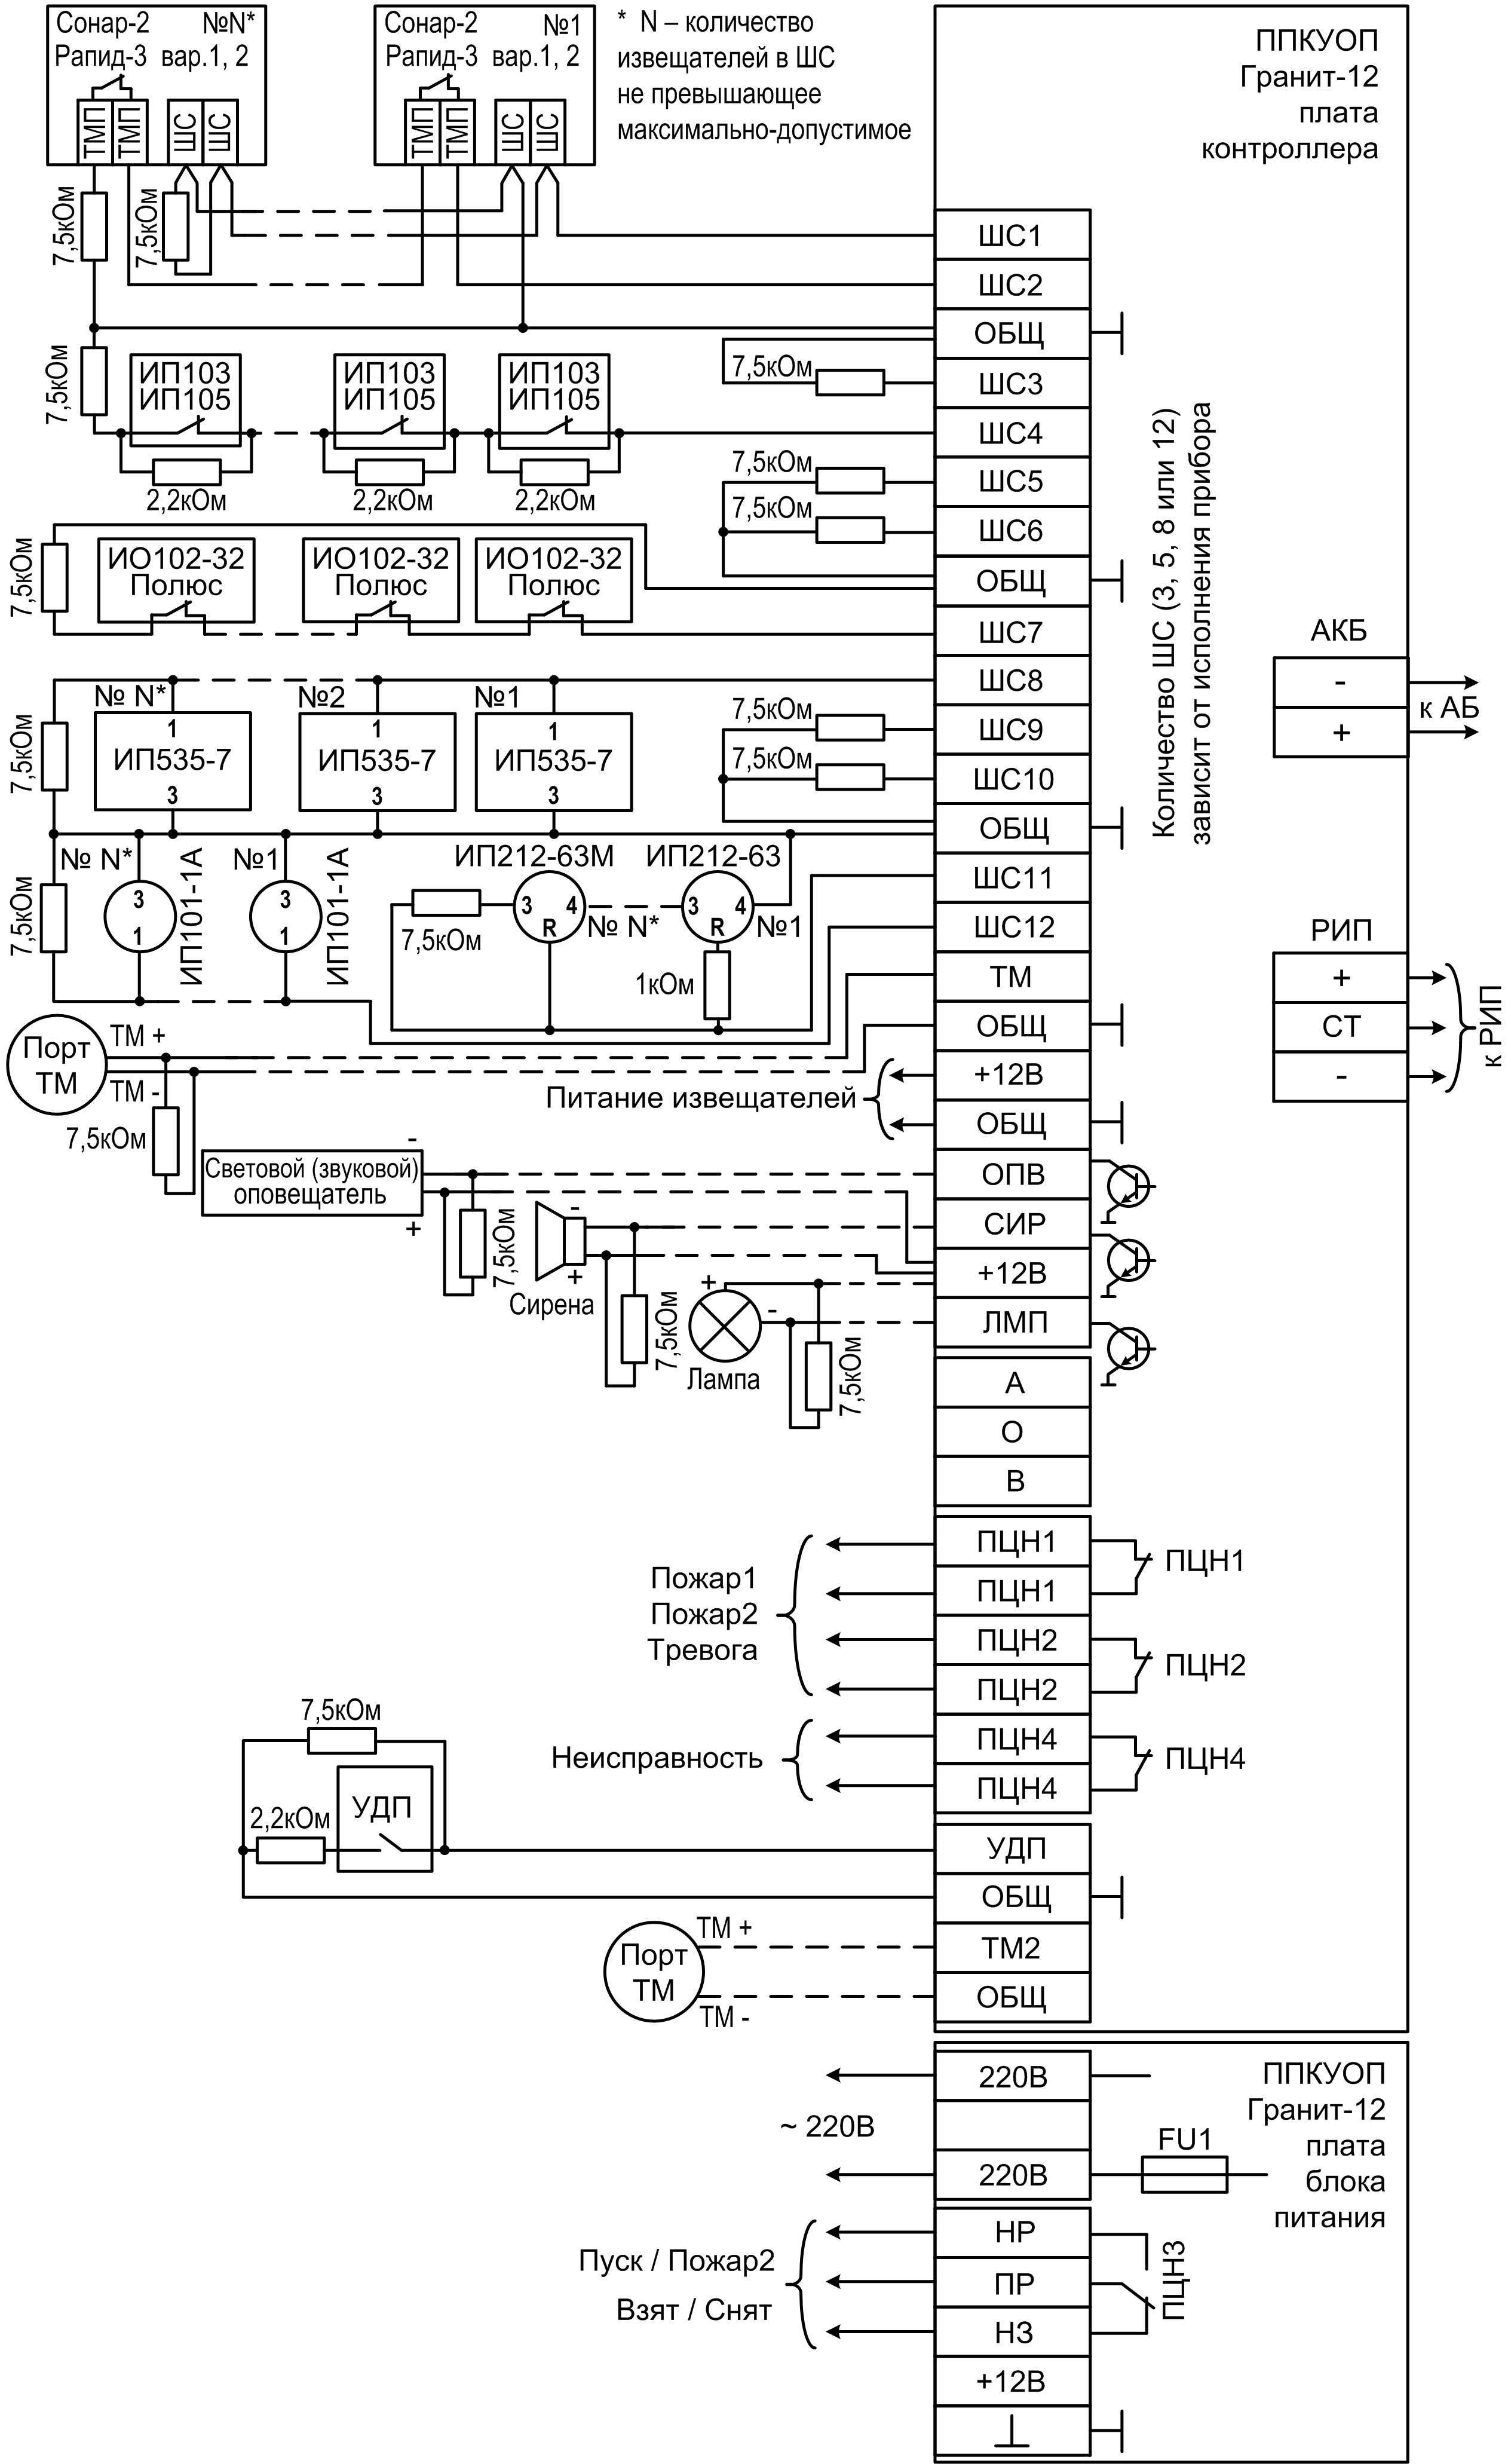 Схема подключения Гранит-8